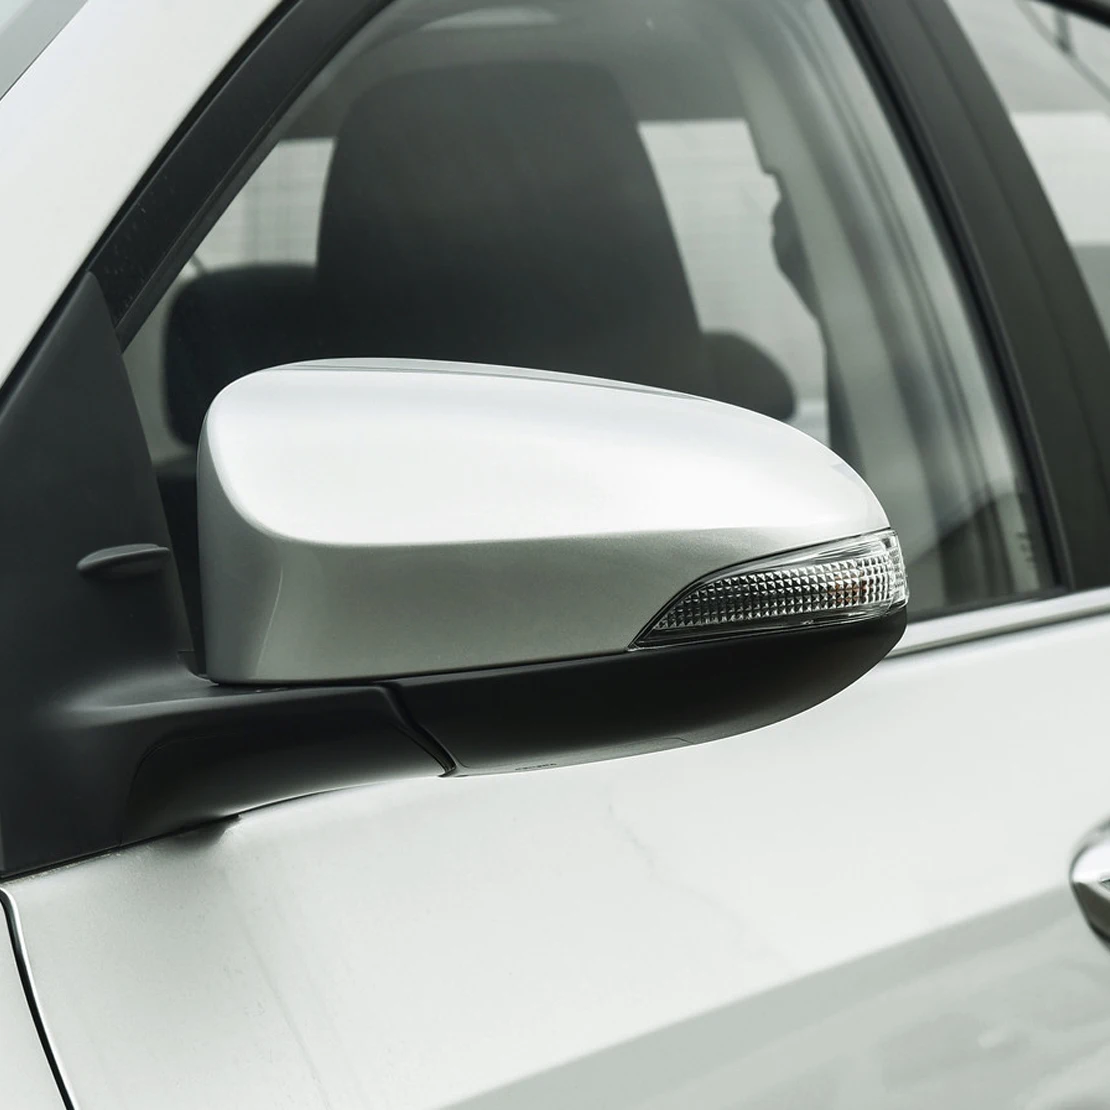 Серебристый автомобильный левый зеркальный чехол из АБС-пластика подходит для